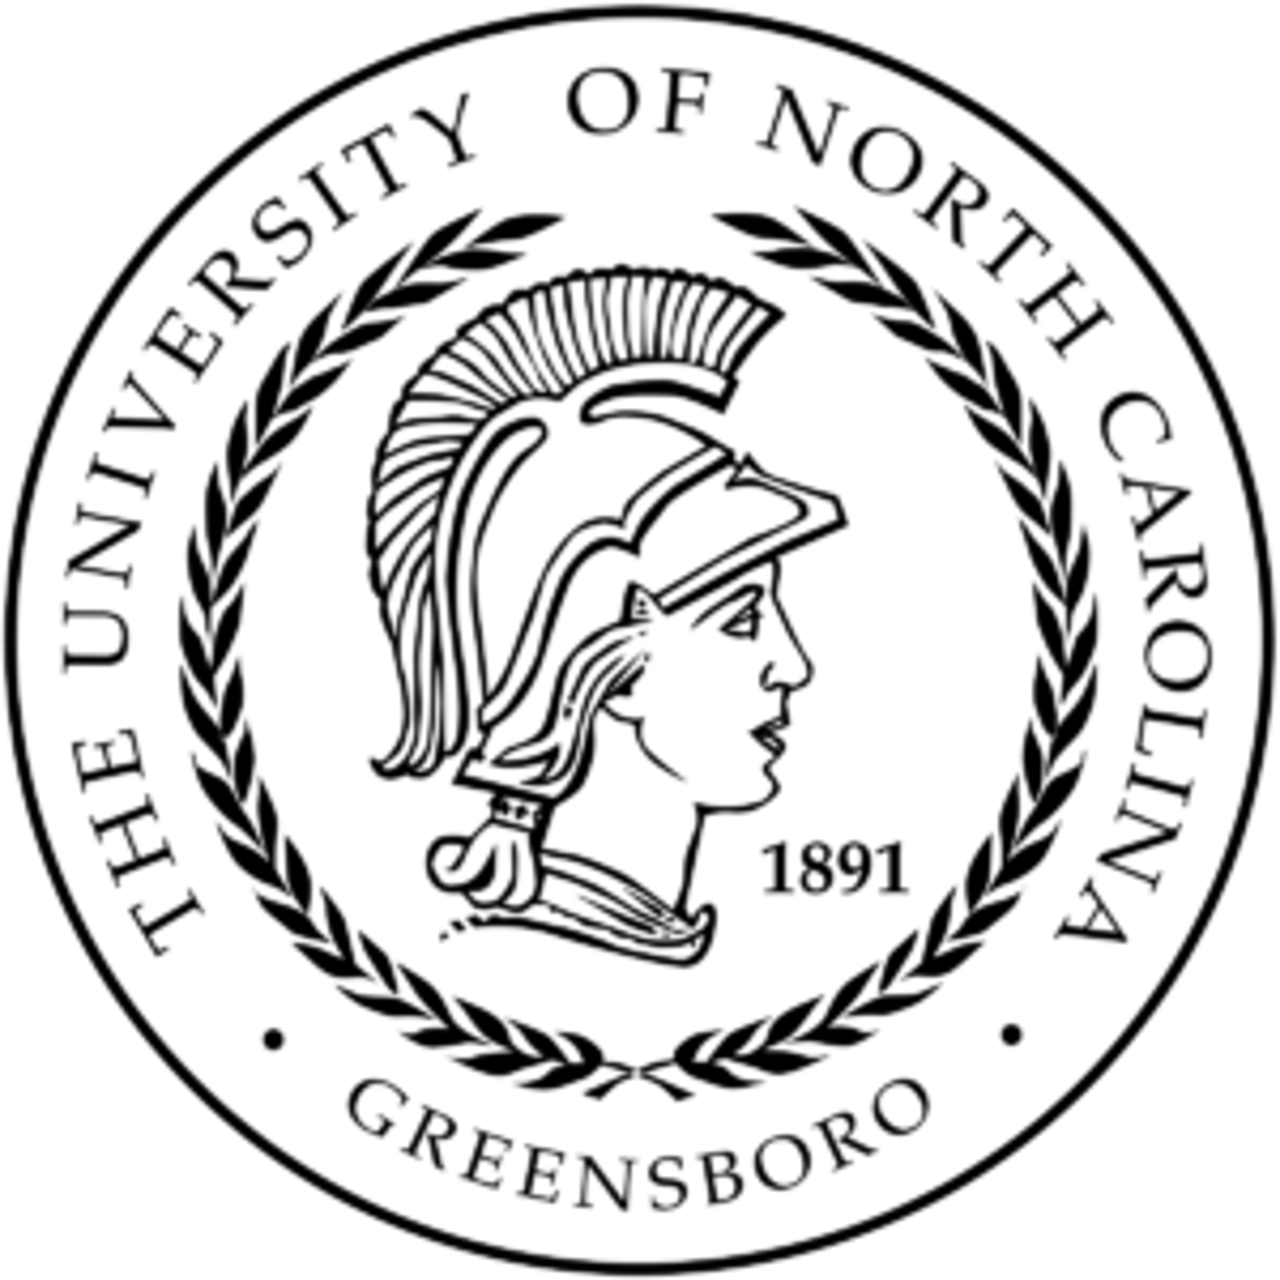 1200px-University_of_North_Carolina_at_Greensboro_seal.svg